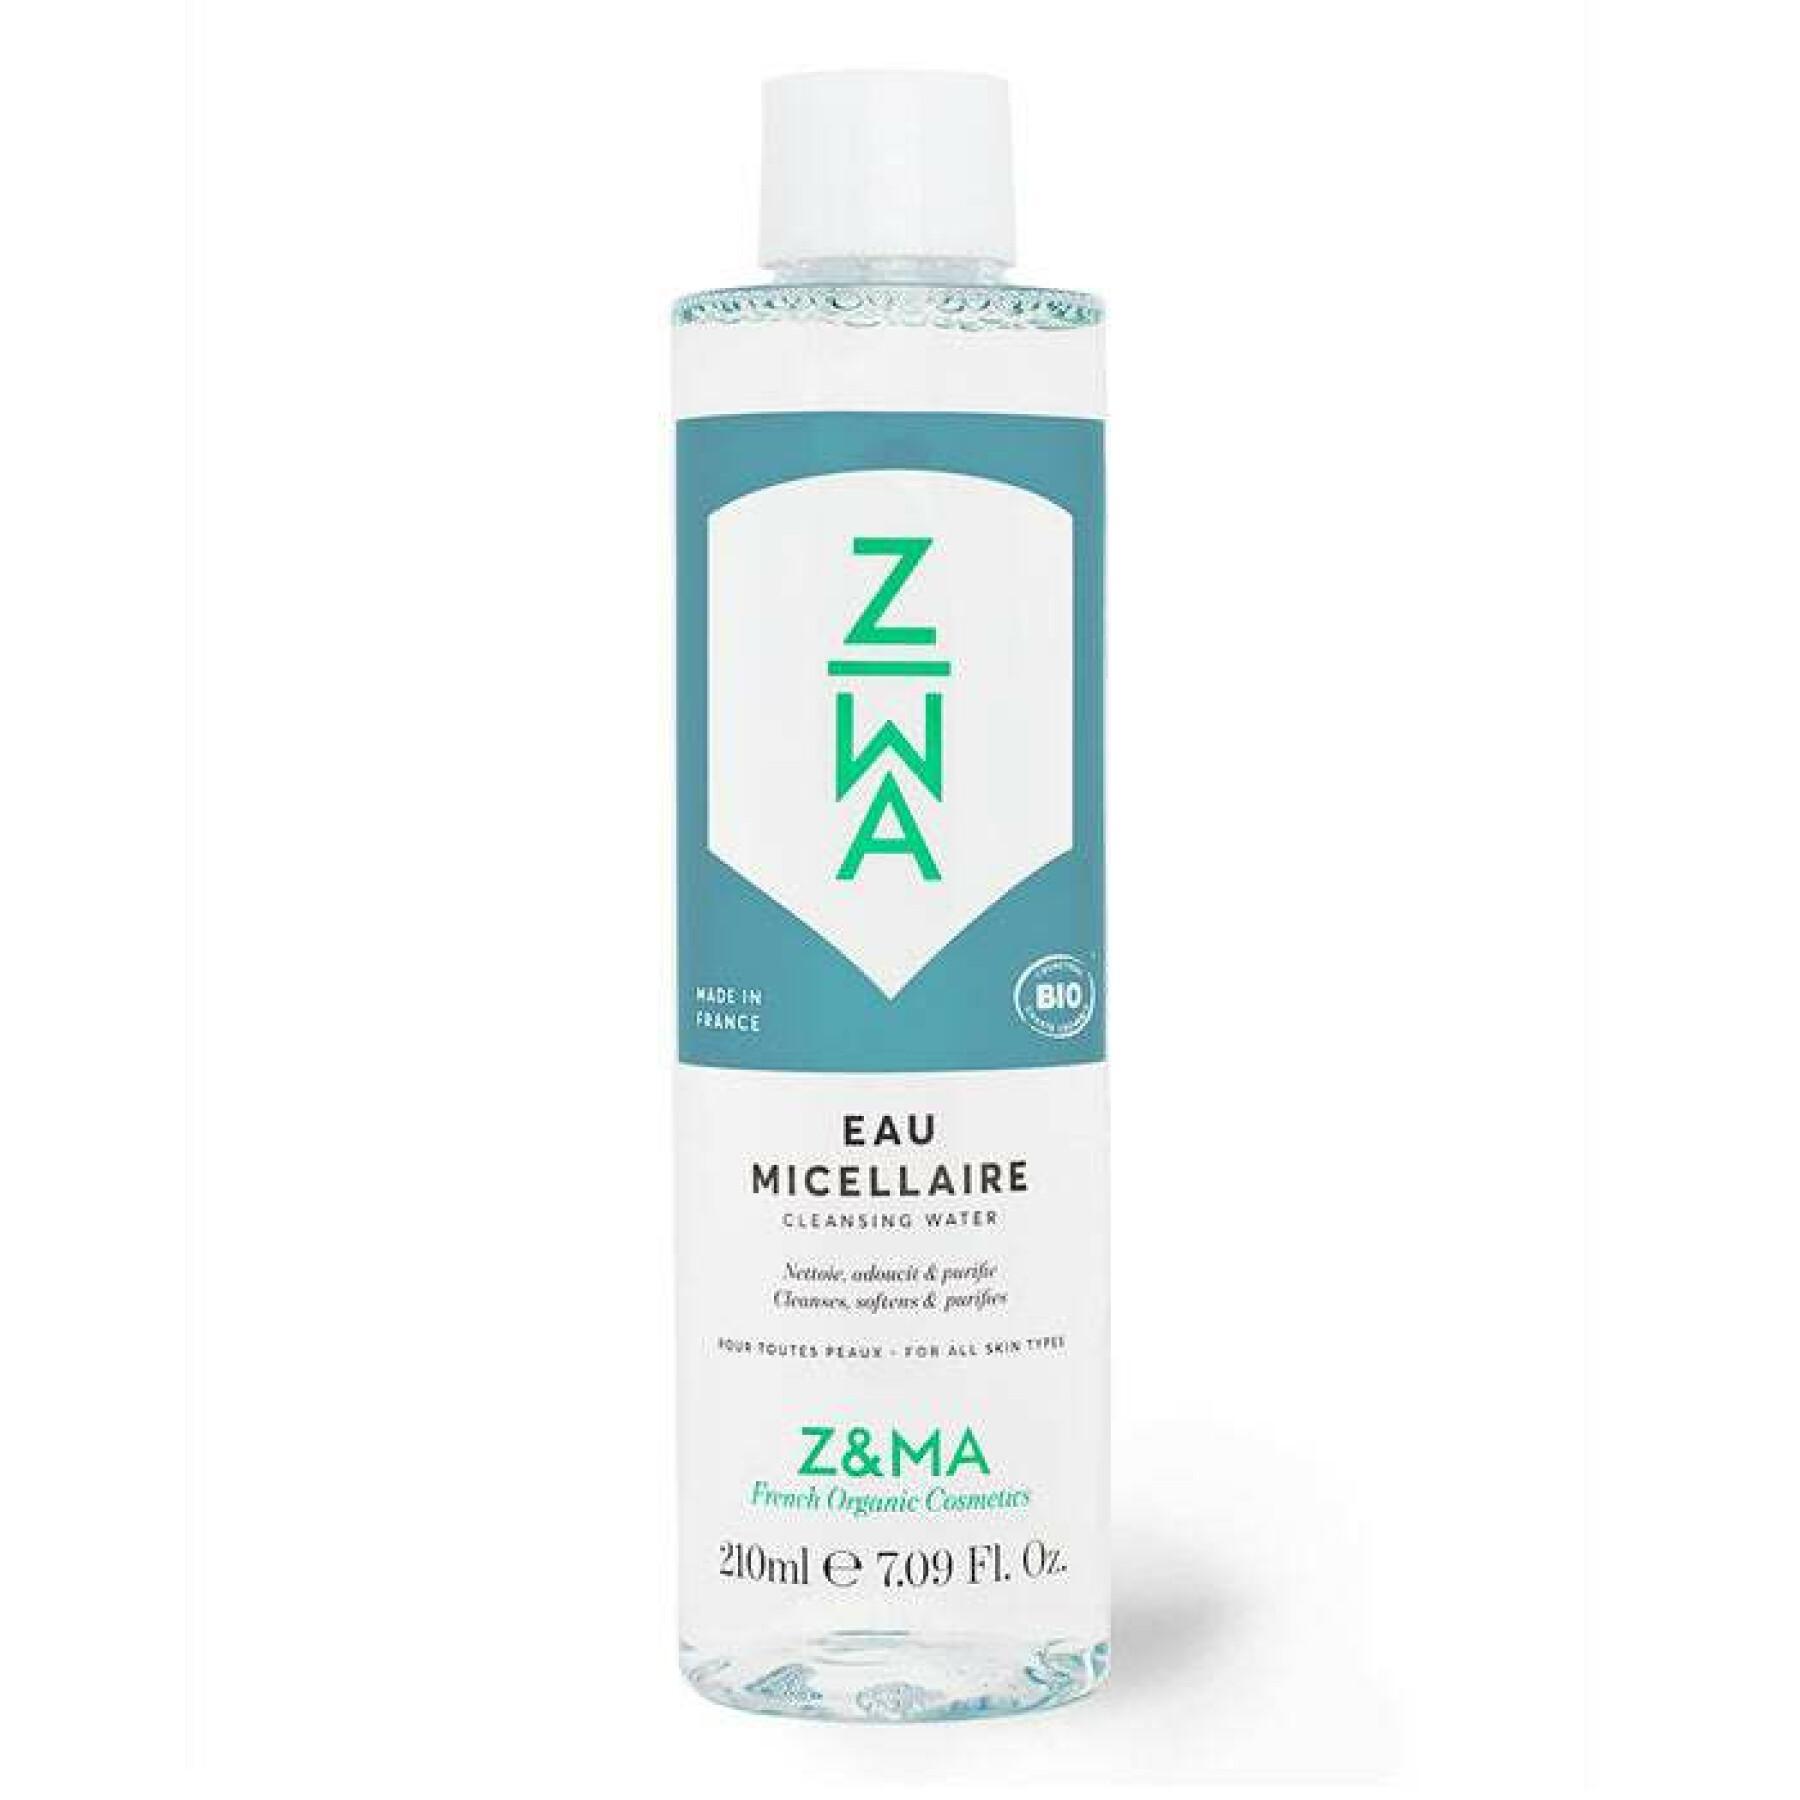 Soin eau micellaire Z&MA 210ml